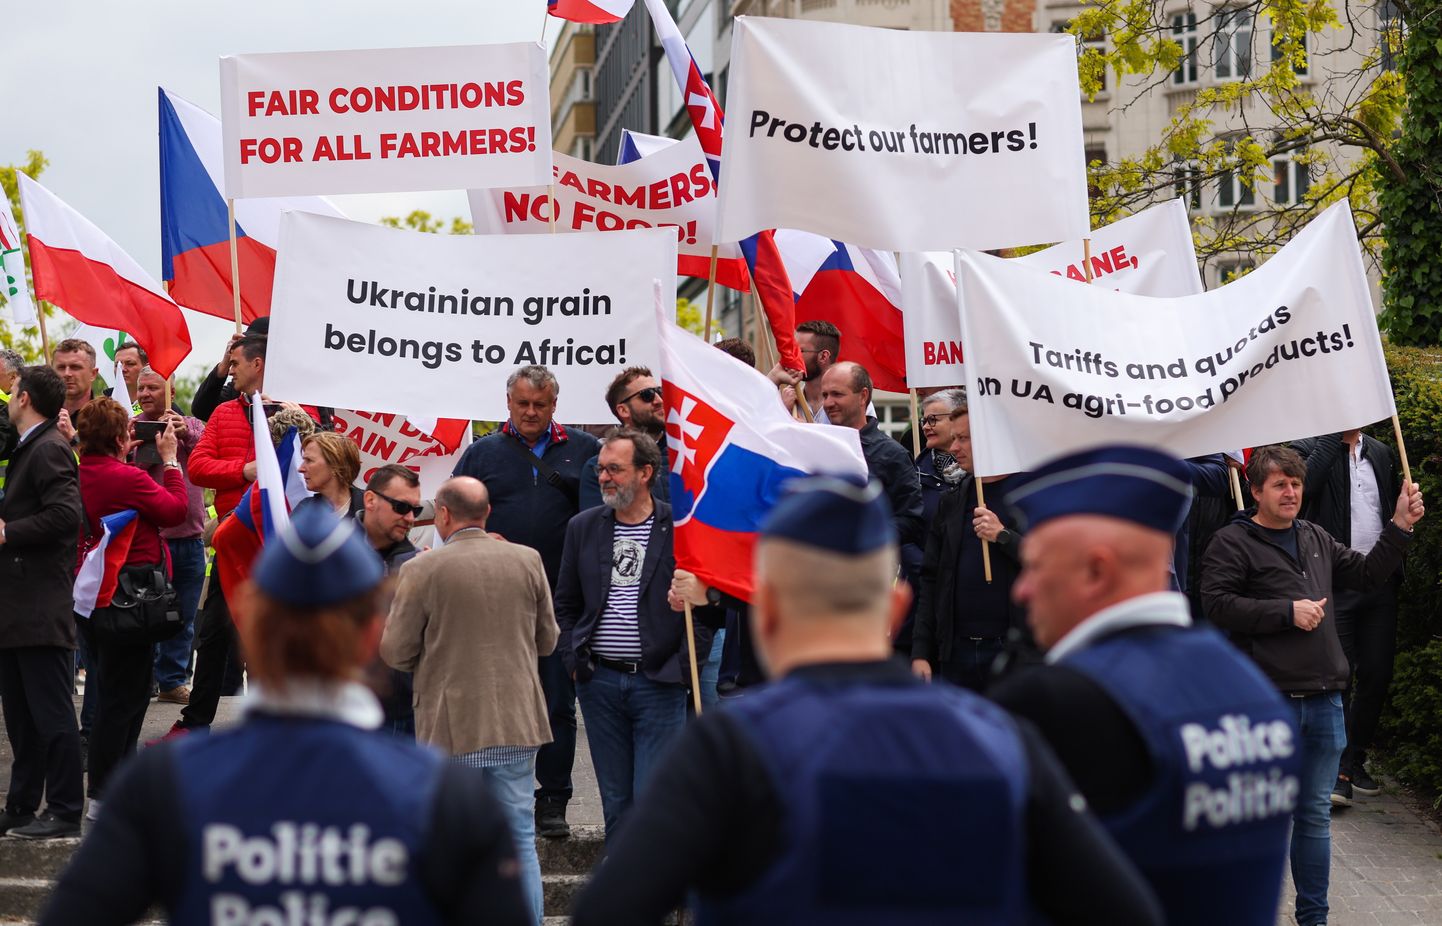 Viie riigi peaministrid kirjutasid juba märtsis Euroopa Komisjoni presidendile Ursula von der Leyenile ning nõudsid Ukraina põllumajandustoodete impordi küsimusega tegelemist. Teisipäeval tulid põllumehed protestima Brüsselisse.